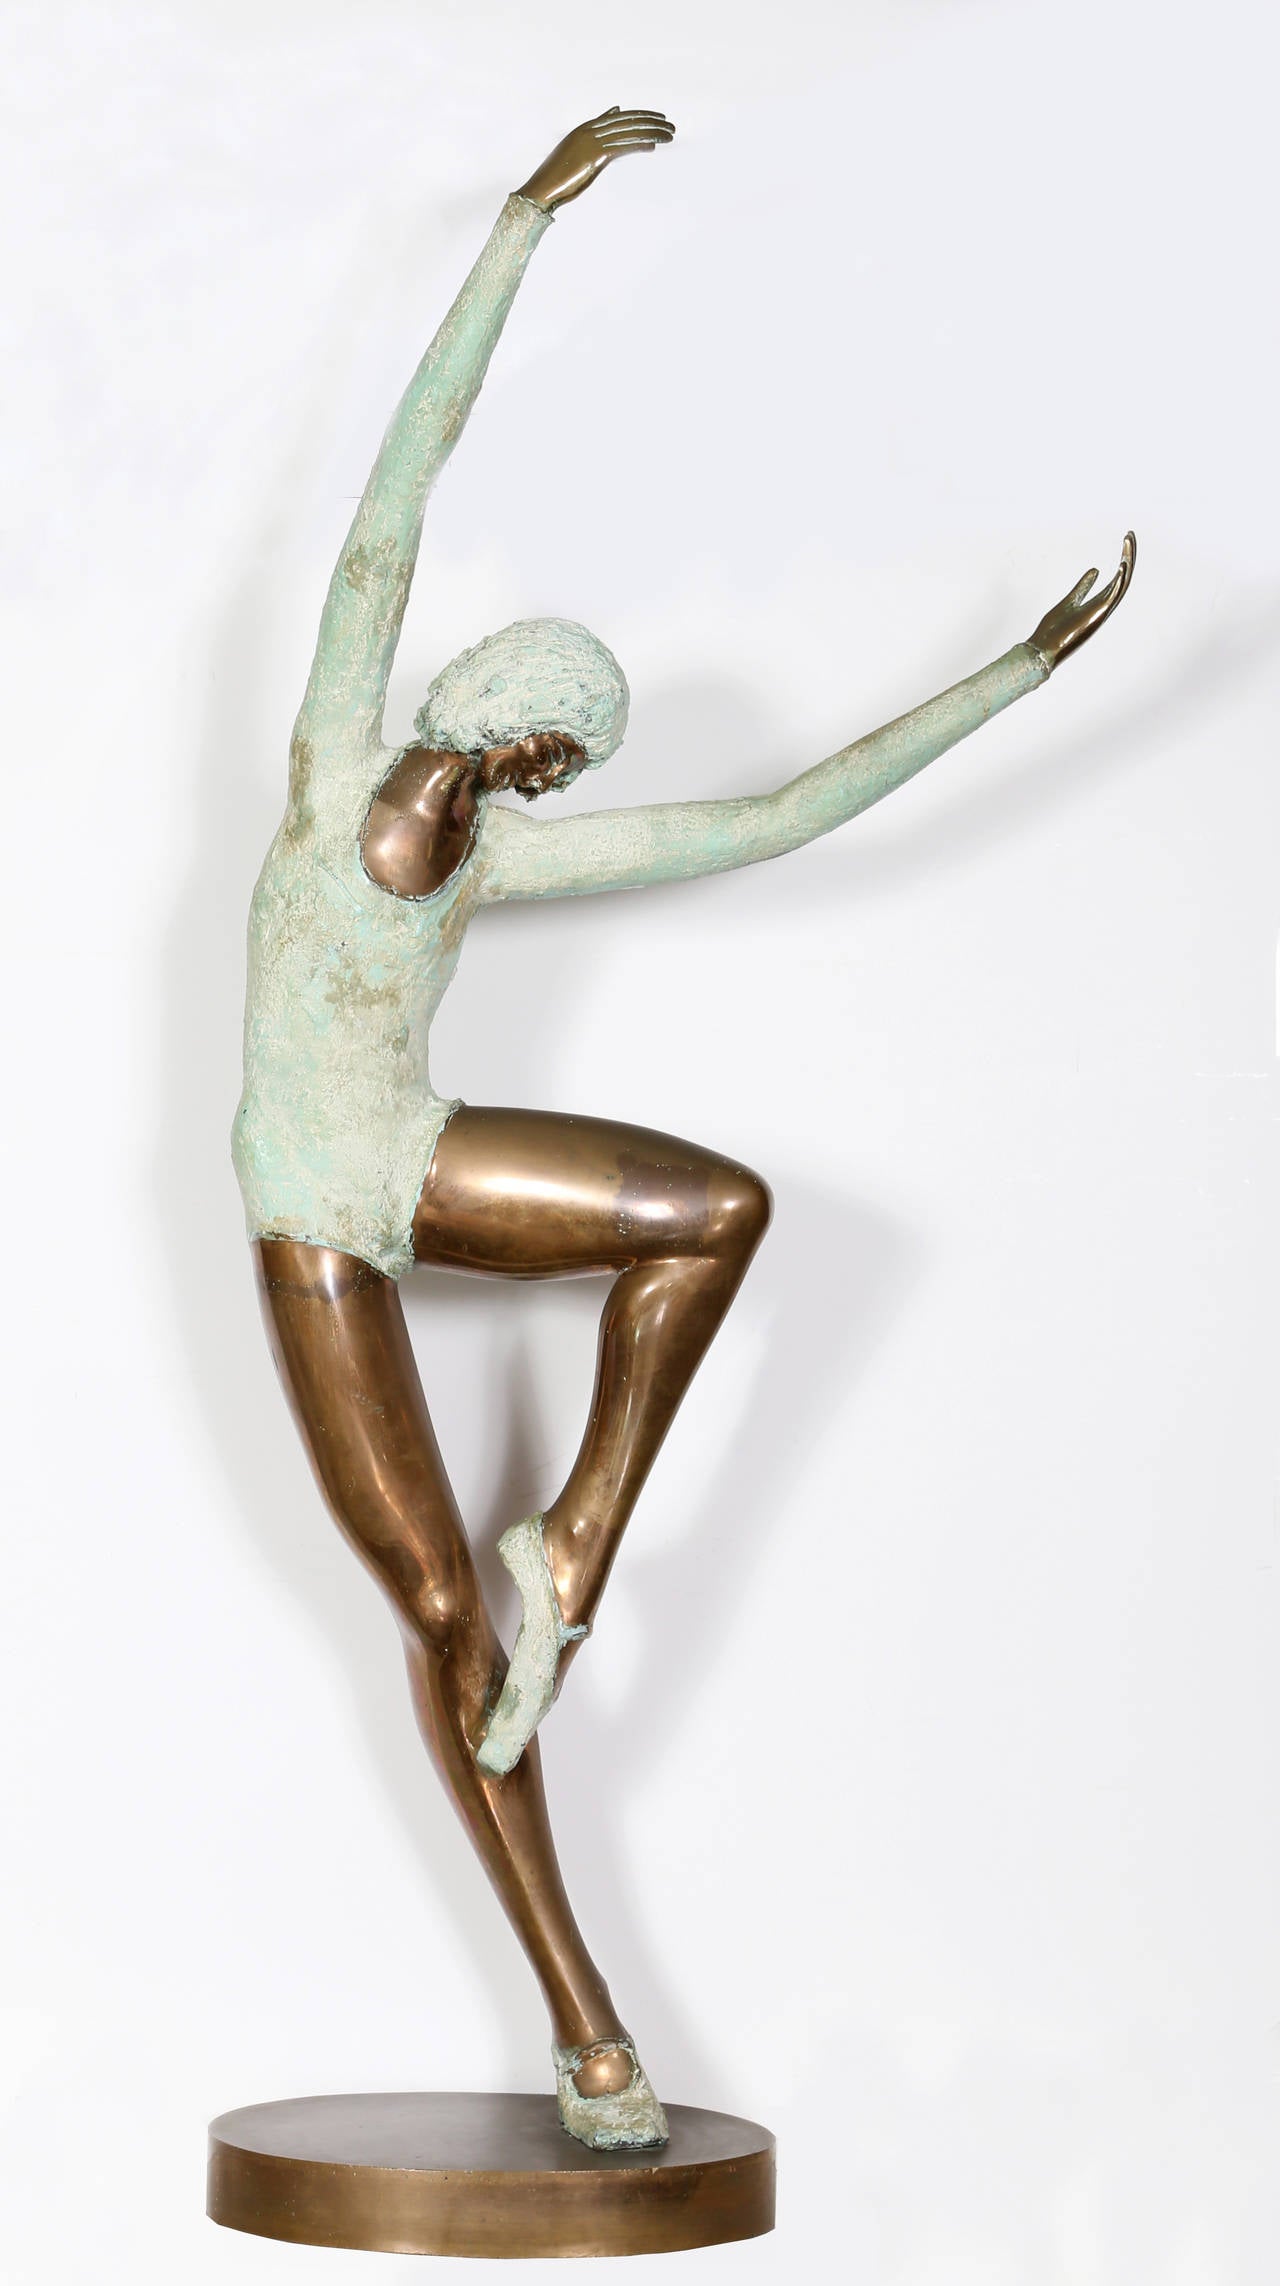 Künstler: Prinz Monyo Simon Mihailescu-Nasturel, Rumäne
Titel: Ballerina Tänzerin
Medium: Bronzeskulptur, Signatur und Nummer eingraviert
Ausgabe: 1/7
Größe: 55 x 21 x 10,5 Zoll (139,7 x 53,34 x 26,67 cm)